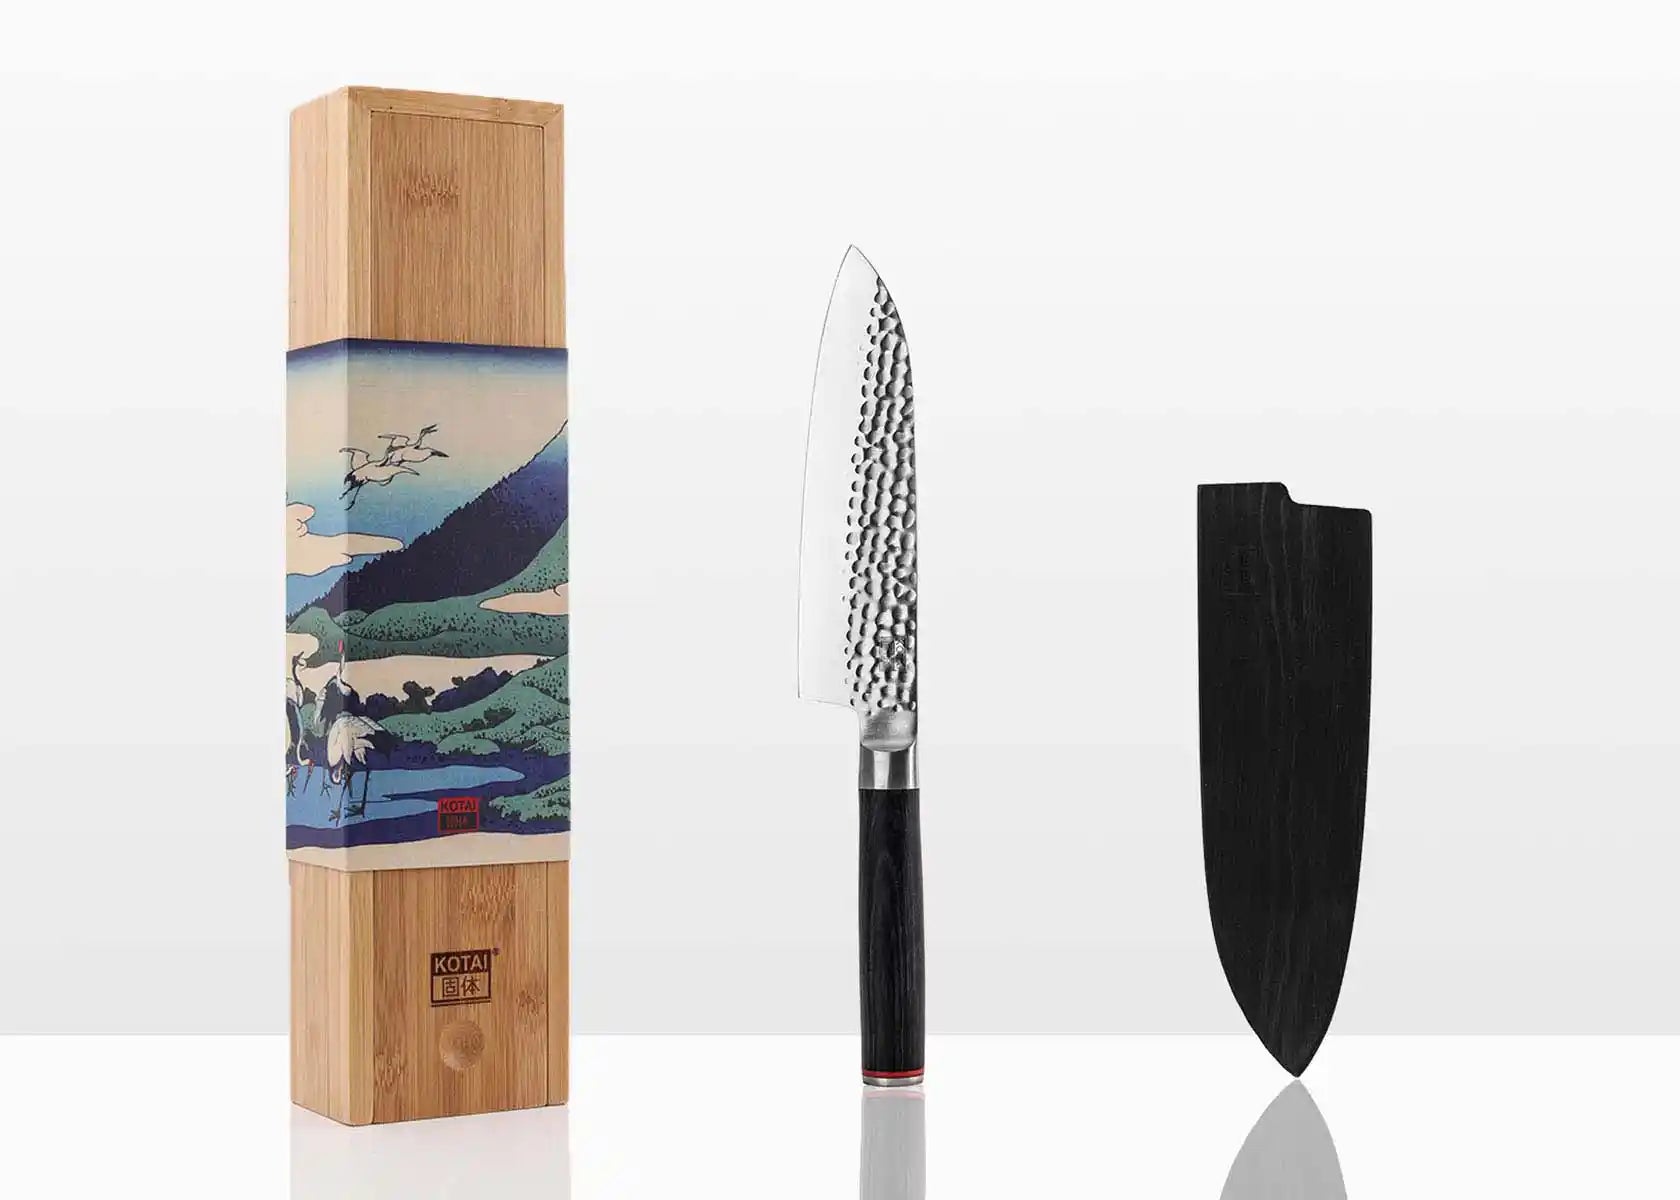 FINDKING Dynasty Series Couteau japonais Santoku - Couteau de cuisine  professionnel - Lame en acier à haute teneur